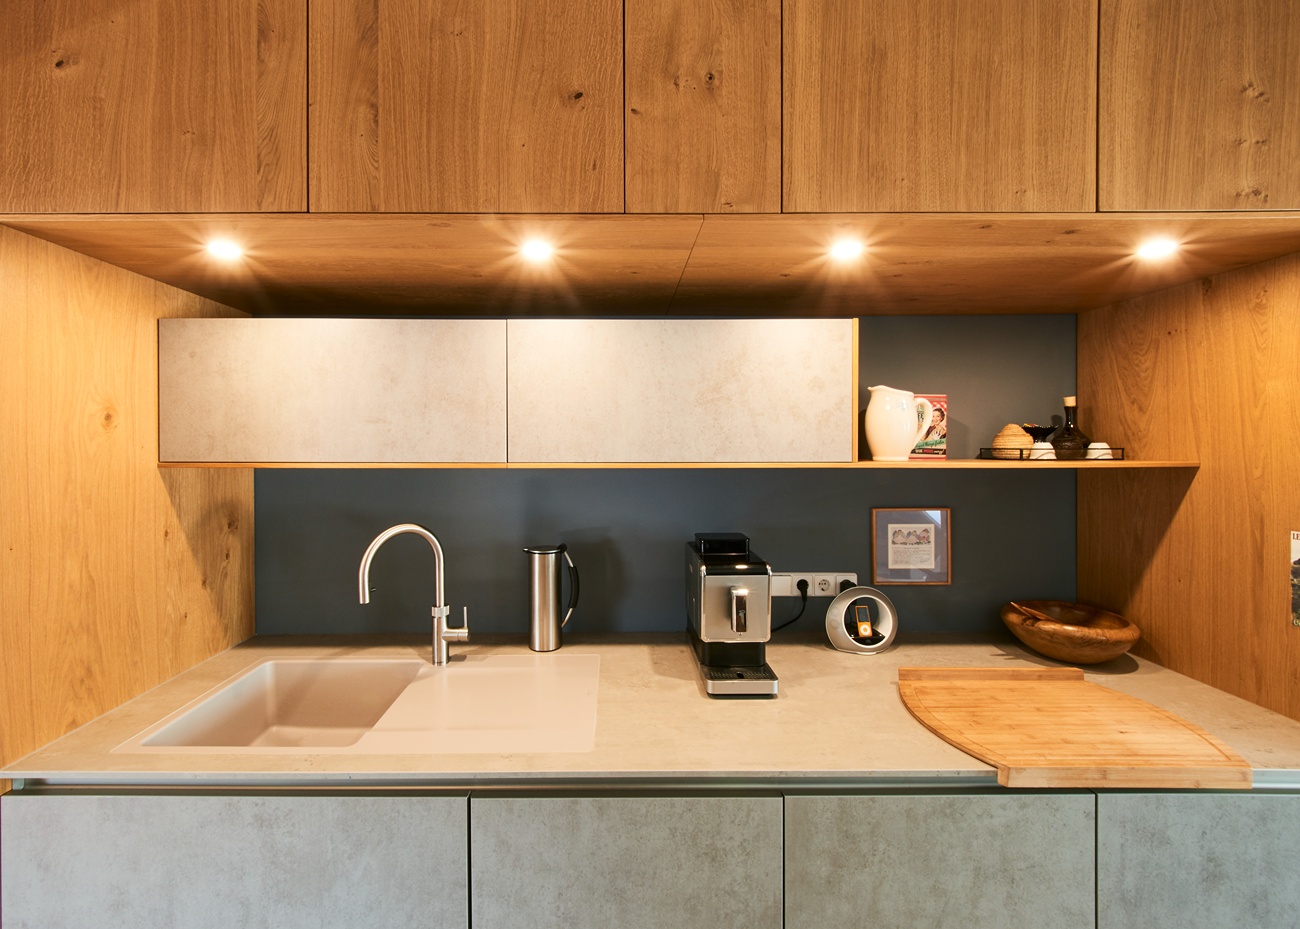 Küchenzeile mit integrierter Beleuchtung in den Holzfronten-Hängeschränken